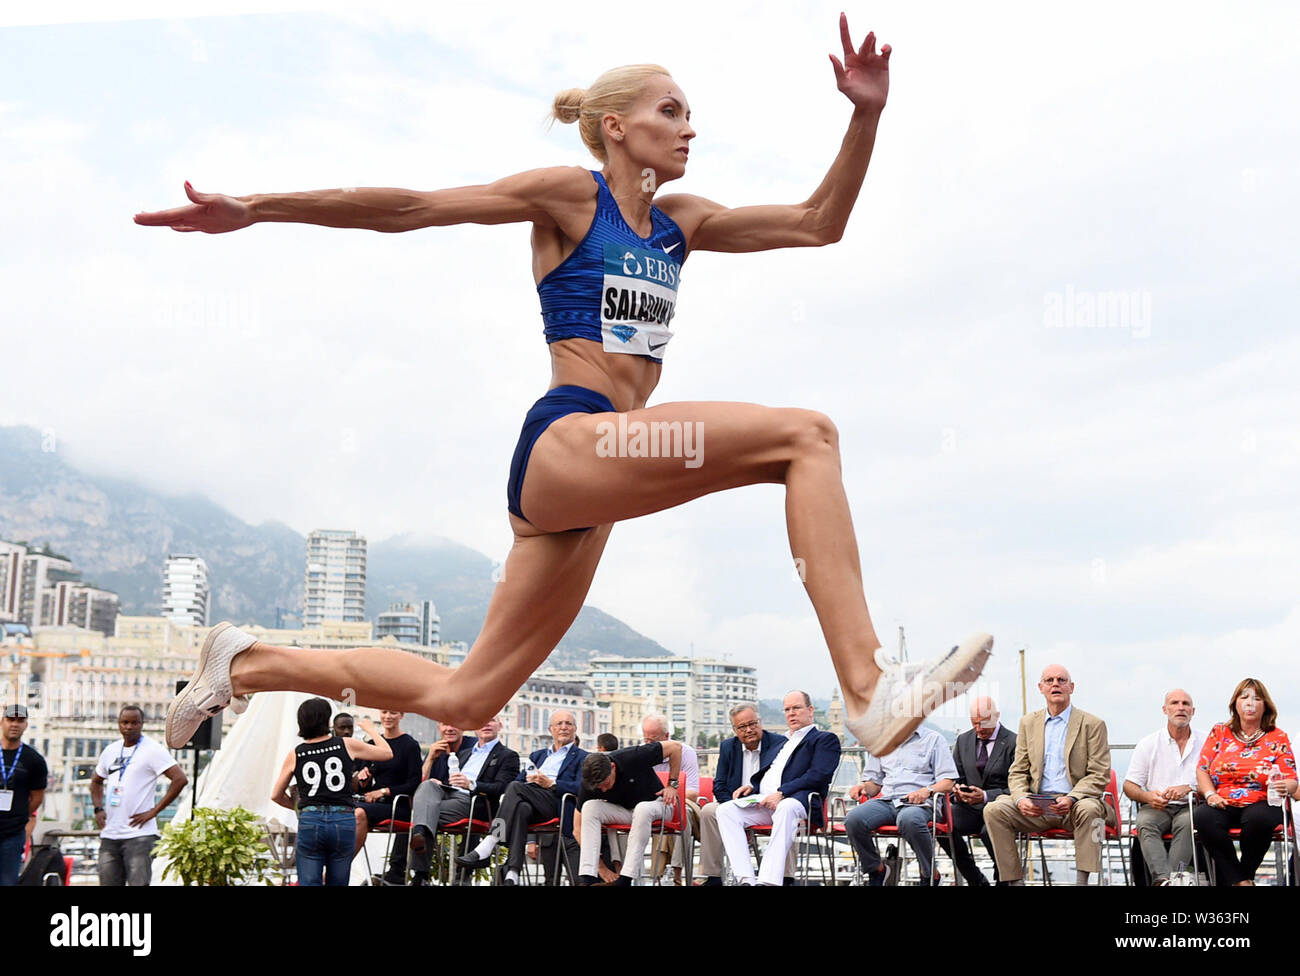 Puerto Hércules, Mónaco. El 11 de julio, 2019. Olha Saladukha (UKR) coloca quinta en el triple salto en la mujer 47-2 1/2 (14.39m) durante el Women's triple salto en el Herculis Mónaco en un IAAF Diamond League satisfacer, Jueves, 11 de julio de 2019, en el puerto de Hercules, Mónaco.(Jiro Mochizuki/imagen del deporte) la foto a través de crédito: Newscom/Alamy Live News Foto de stock